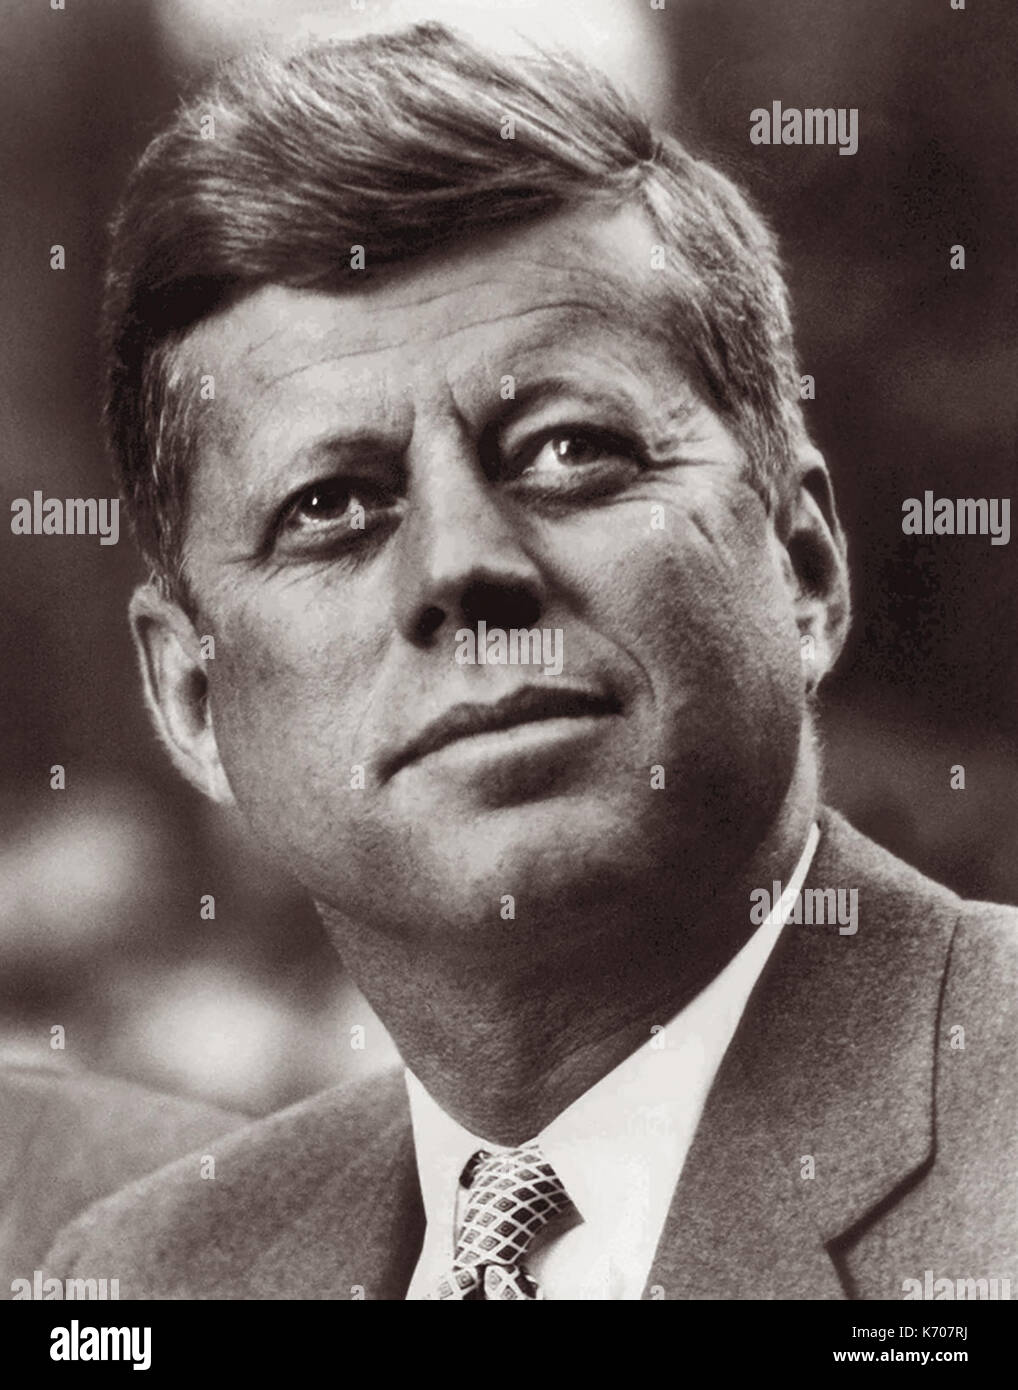 John F. Kennedy, communément appelé JFK, a été le 35e président des États-Unis à partir de janvier 1961 jusqu'à son assassinat le 22 novembre 1963. (Photo : 6 Septembre, 1960) Banque D'Images